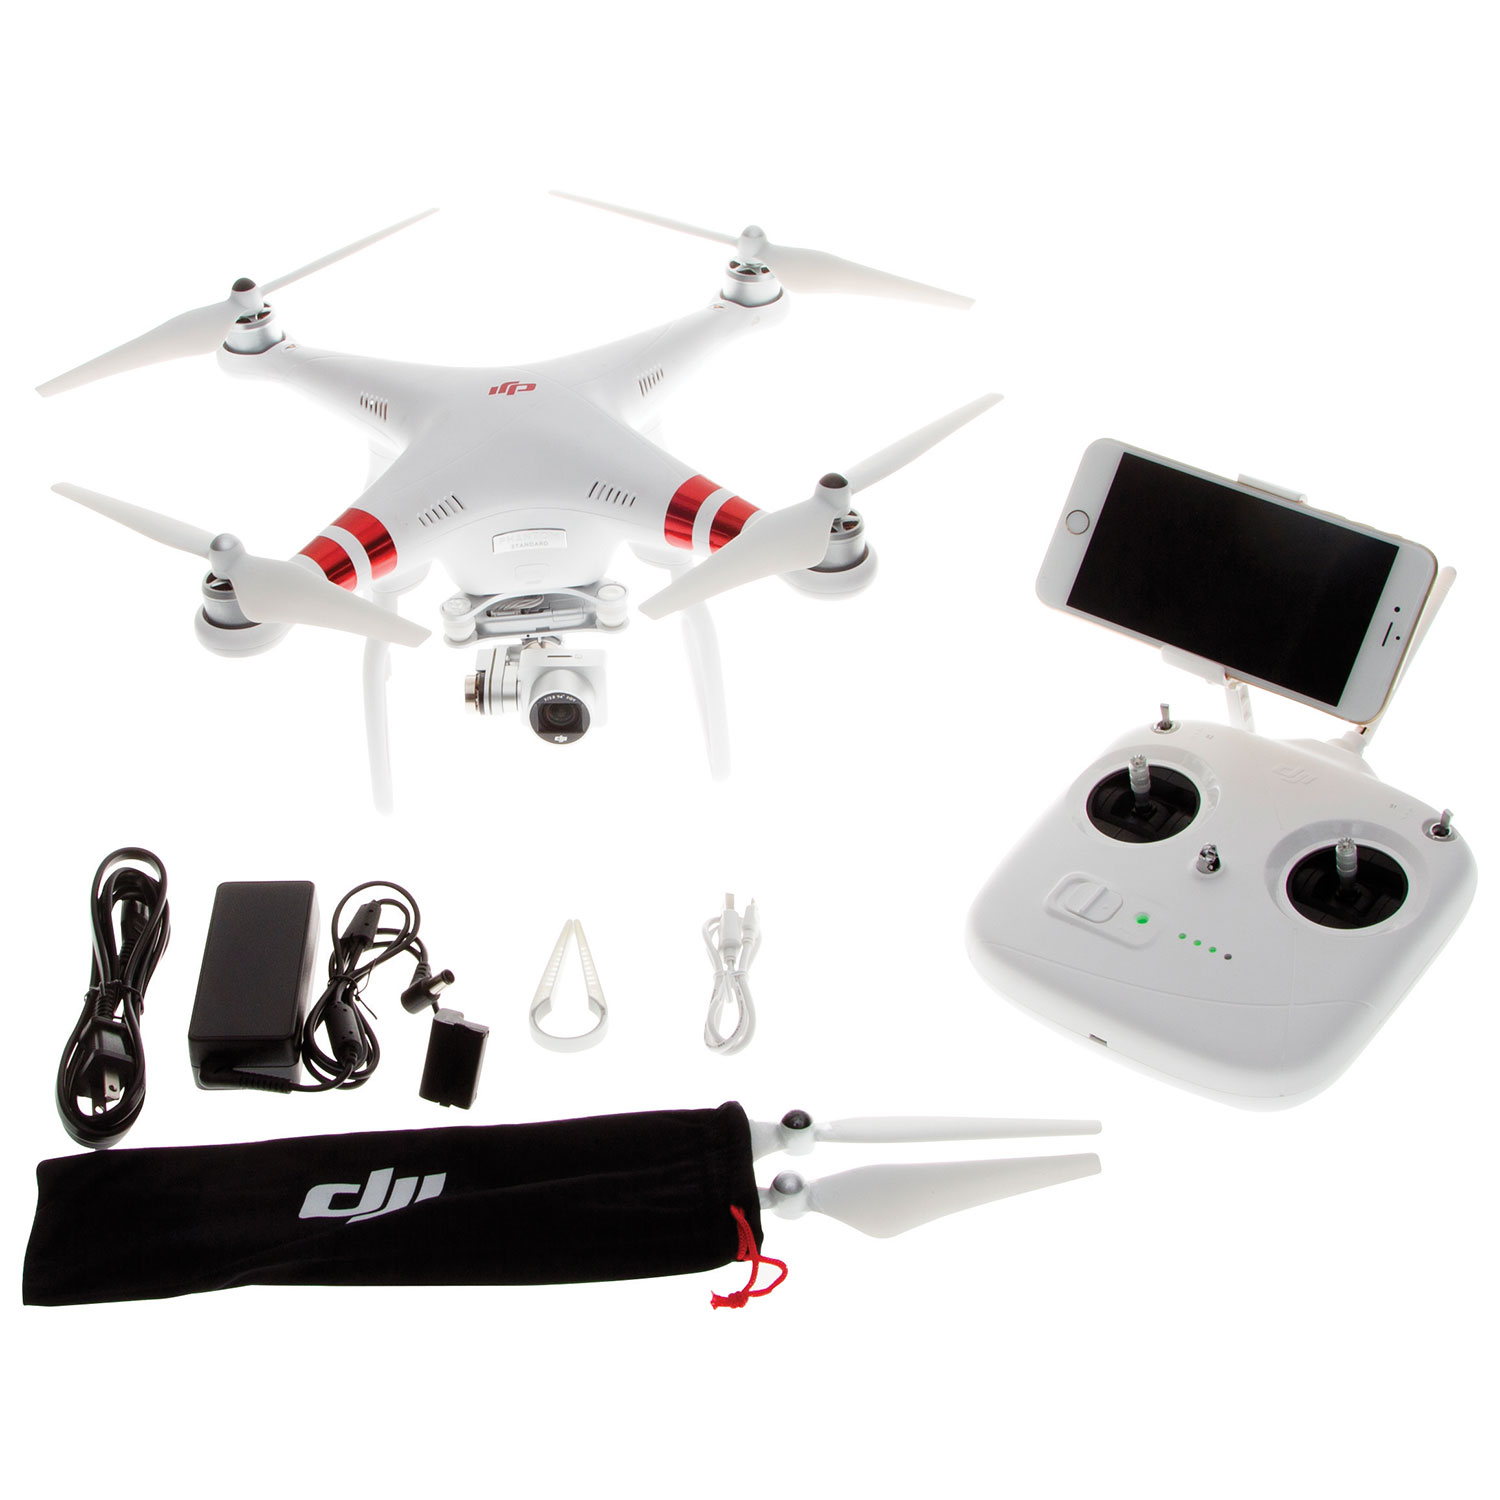 DJI Phantom 3 Standard Quadcopter Drone with Camera & Controller ...